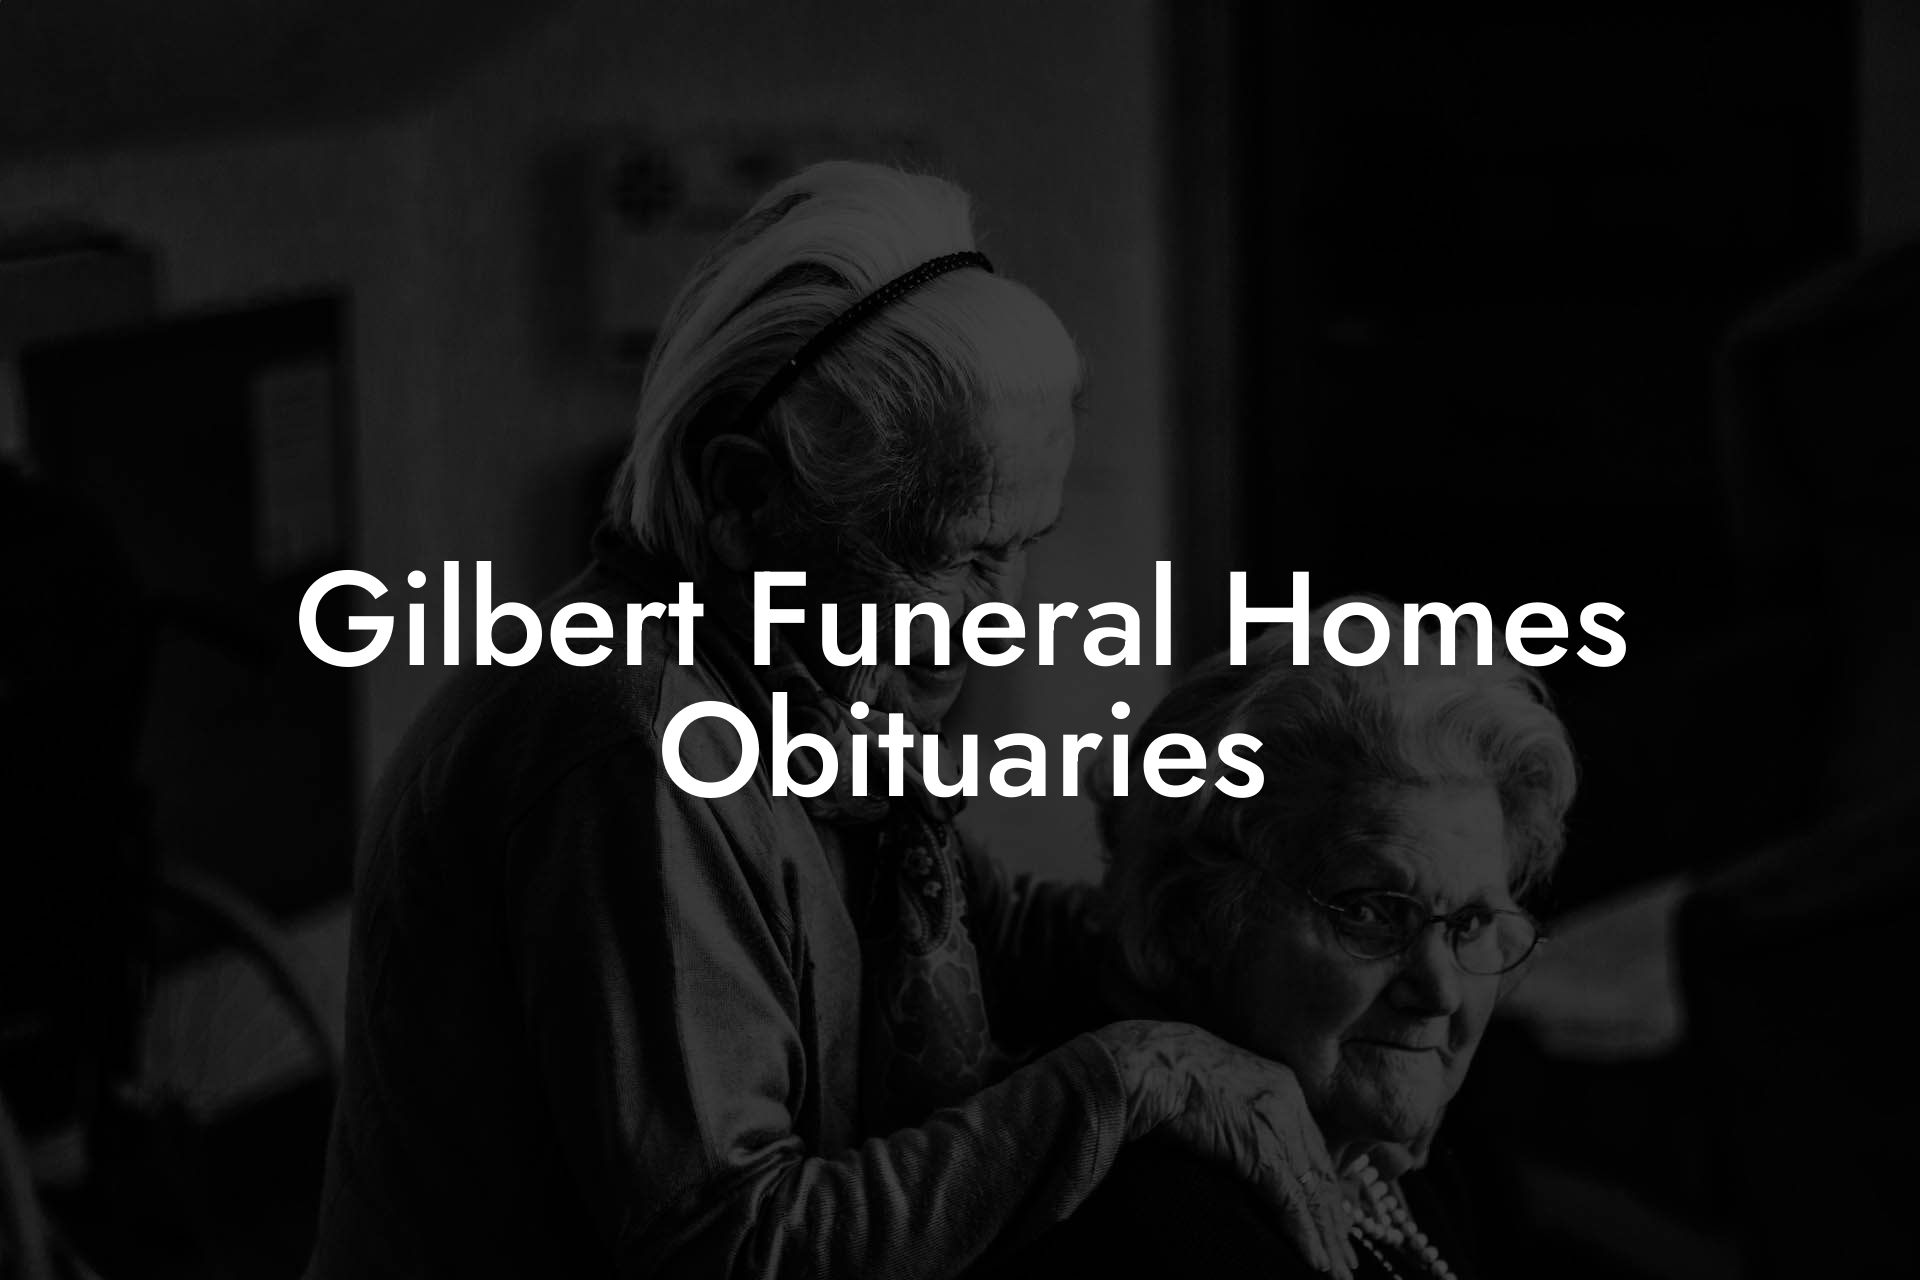 Gilbert Funeral Homes Obituaries